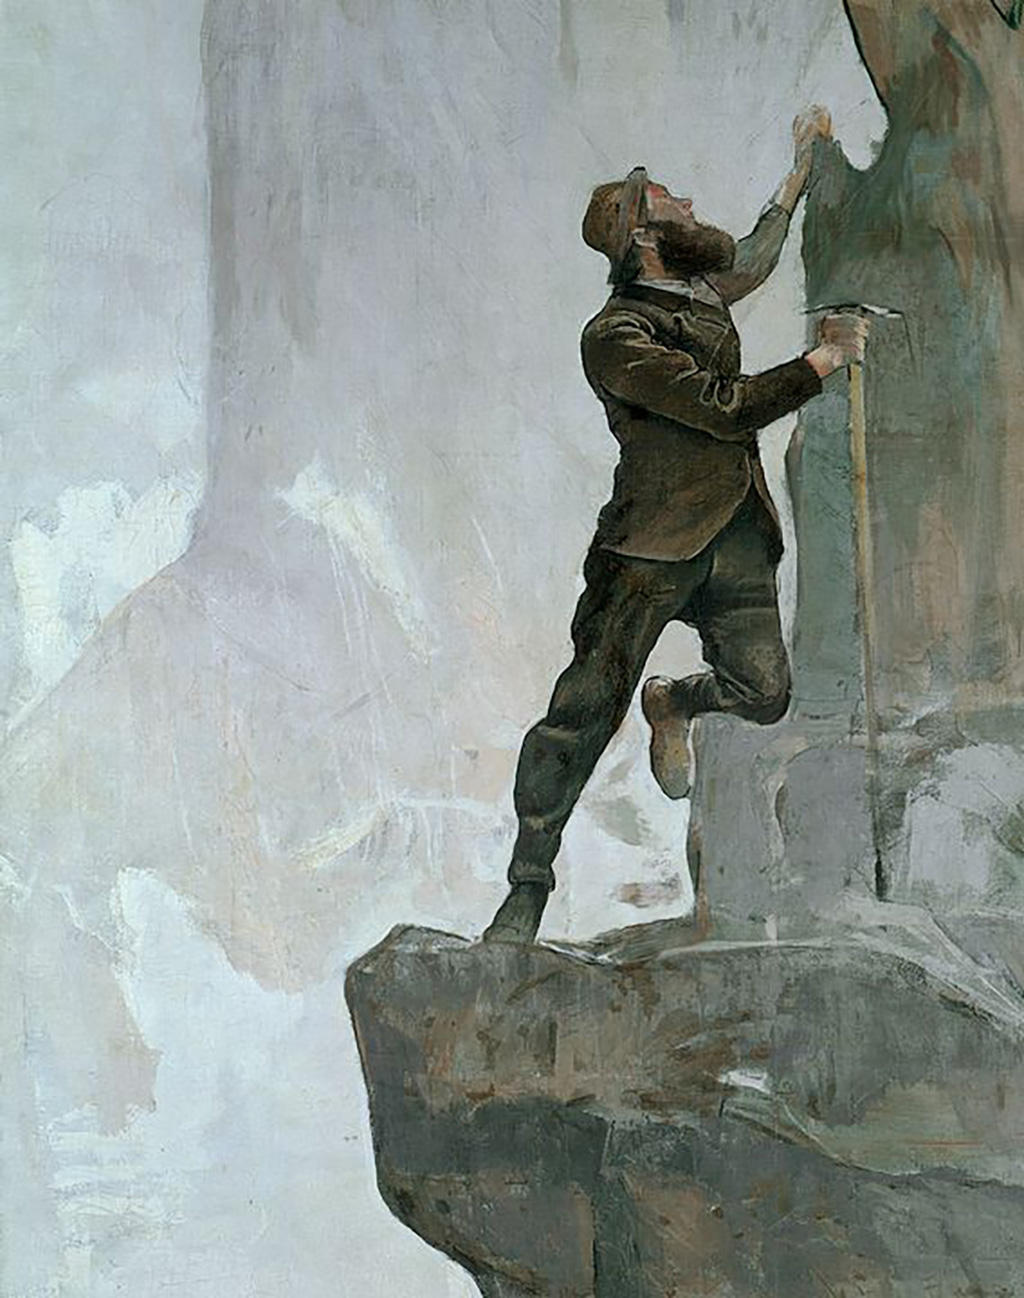 Peinture de Ferdinand Hodler: Un homme escalade une montagne